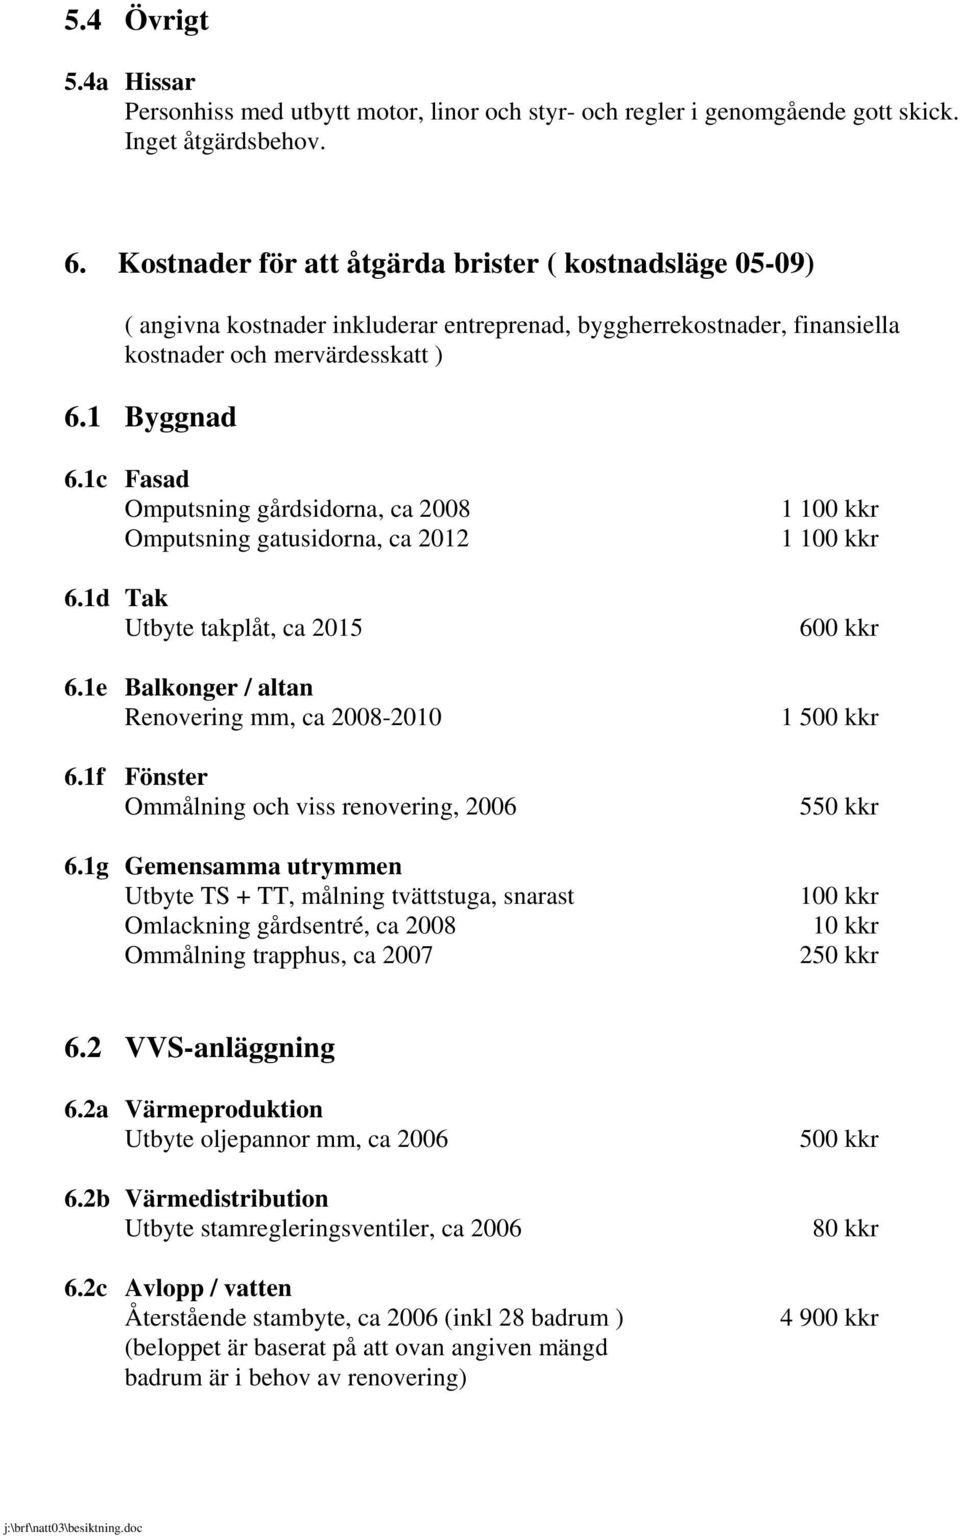 1c Fasad Omputsning gårdsidorna, ca 2008 Omputsning gatusidorna, ca 2012 6.1d Tak Utbyte takplåt, ca 2015 6.1e Balkonger / altan Renovering mm, ca 2008-2010 6.